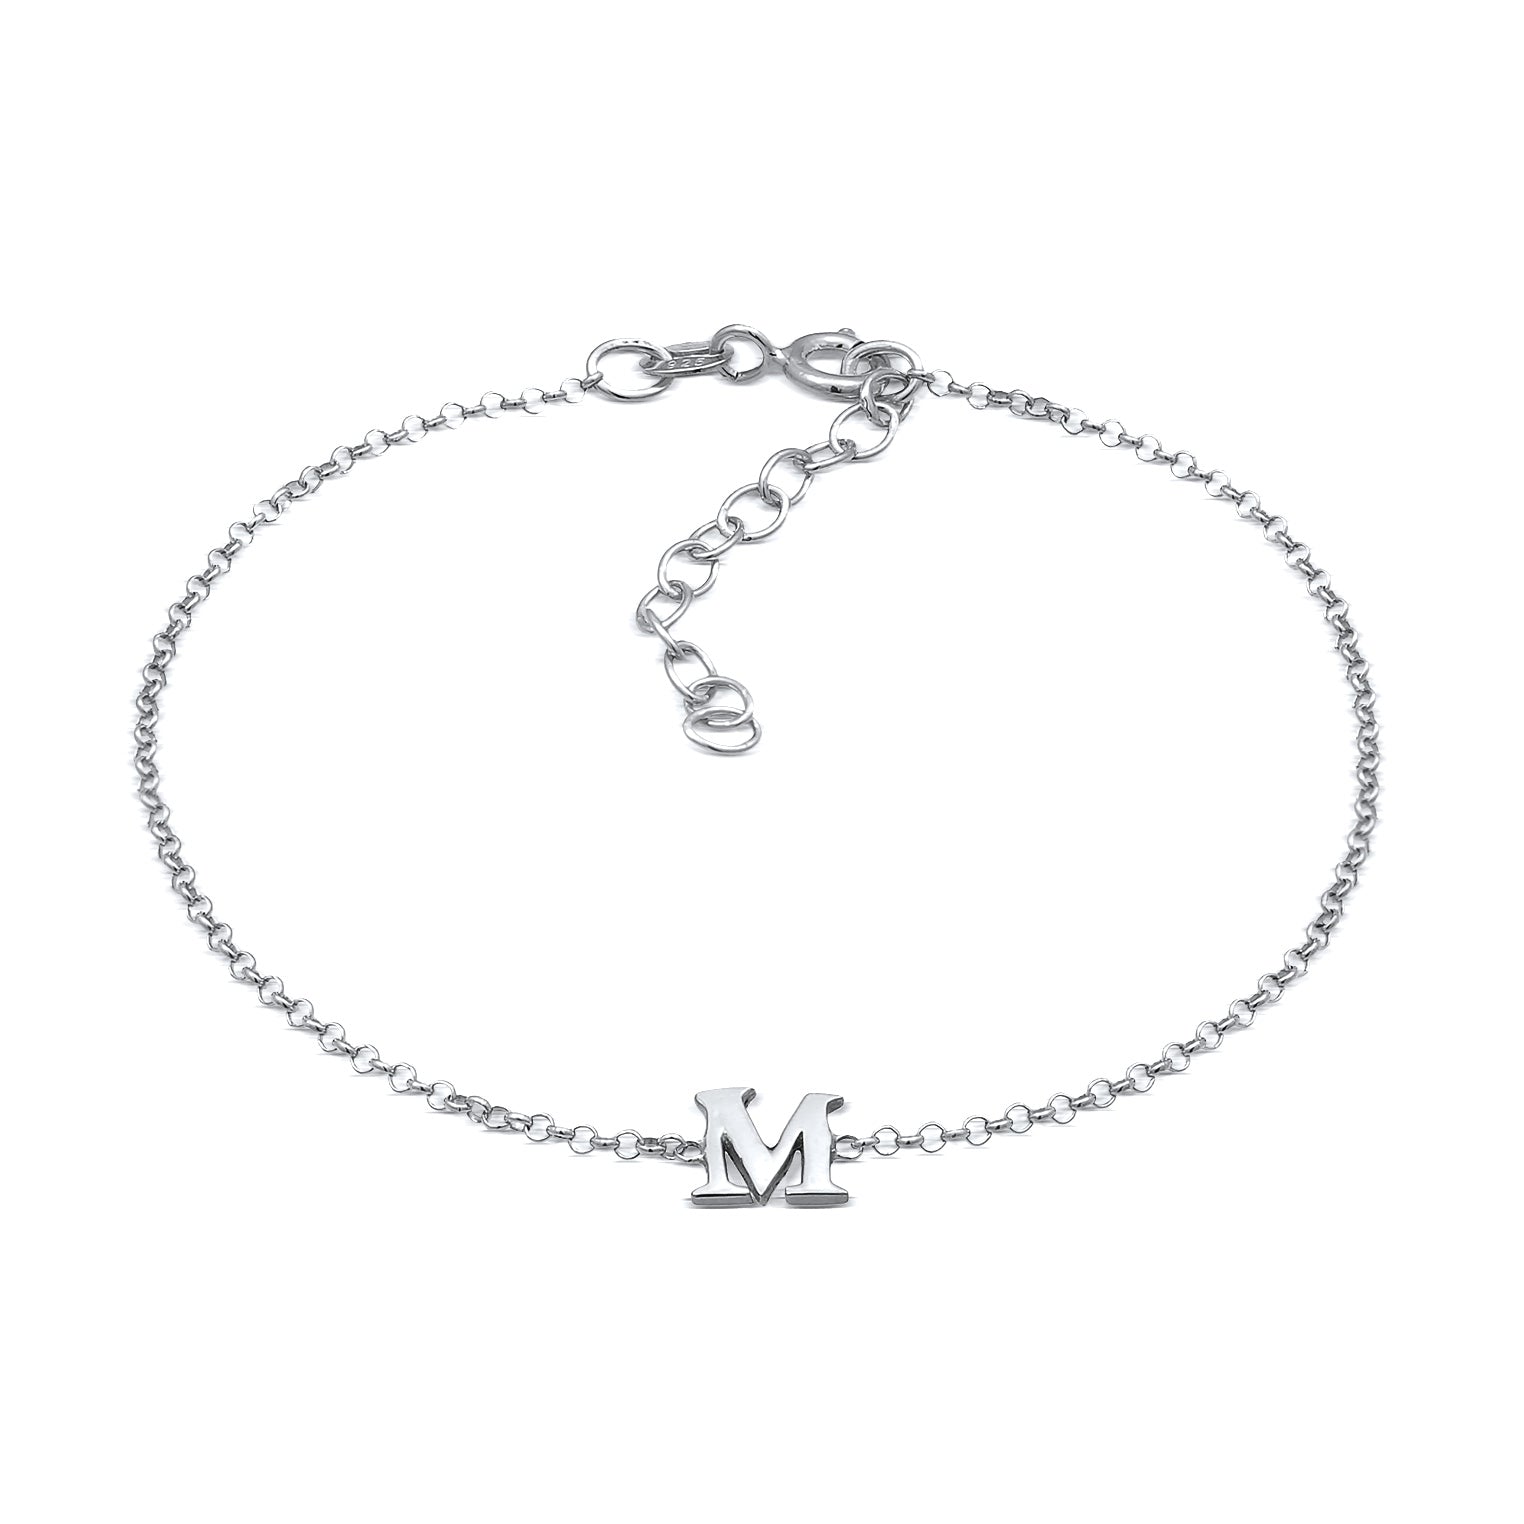 Armbänder im Online-Shop von – Elli Seite 4 kaufen Jewelry – Elli